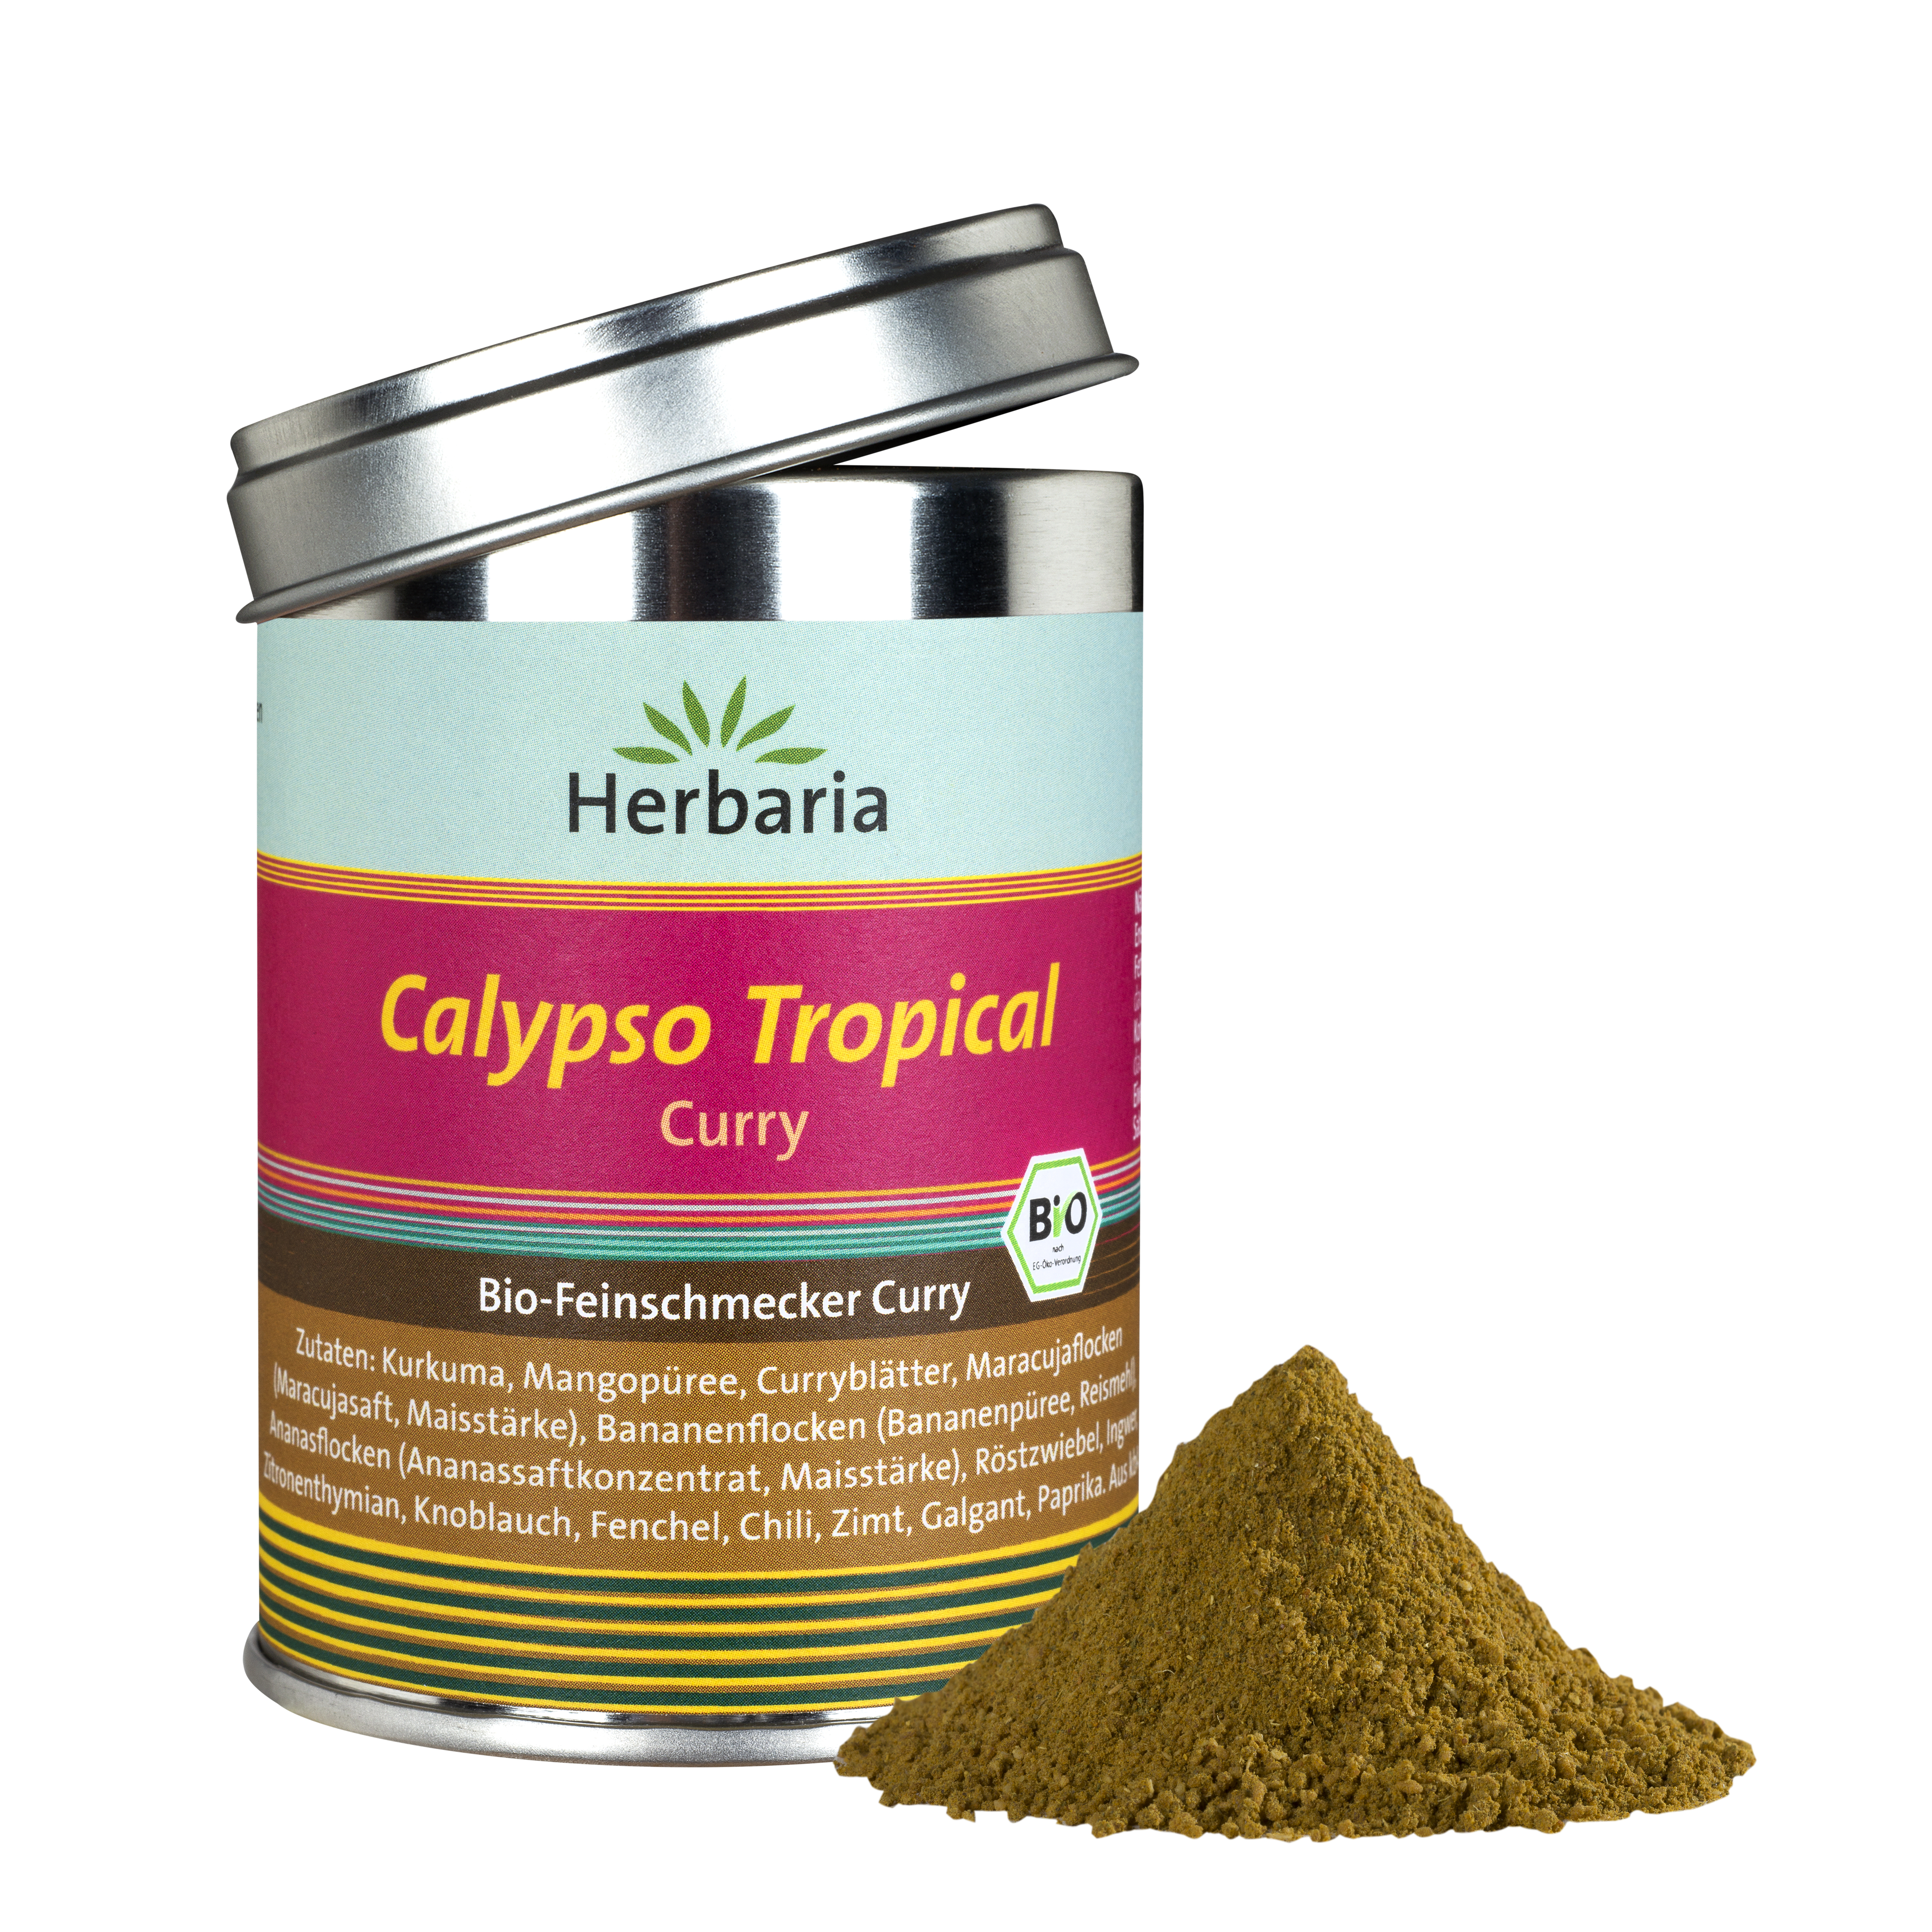 Calypso Tropical Curry